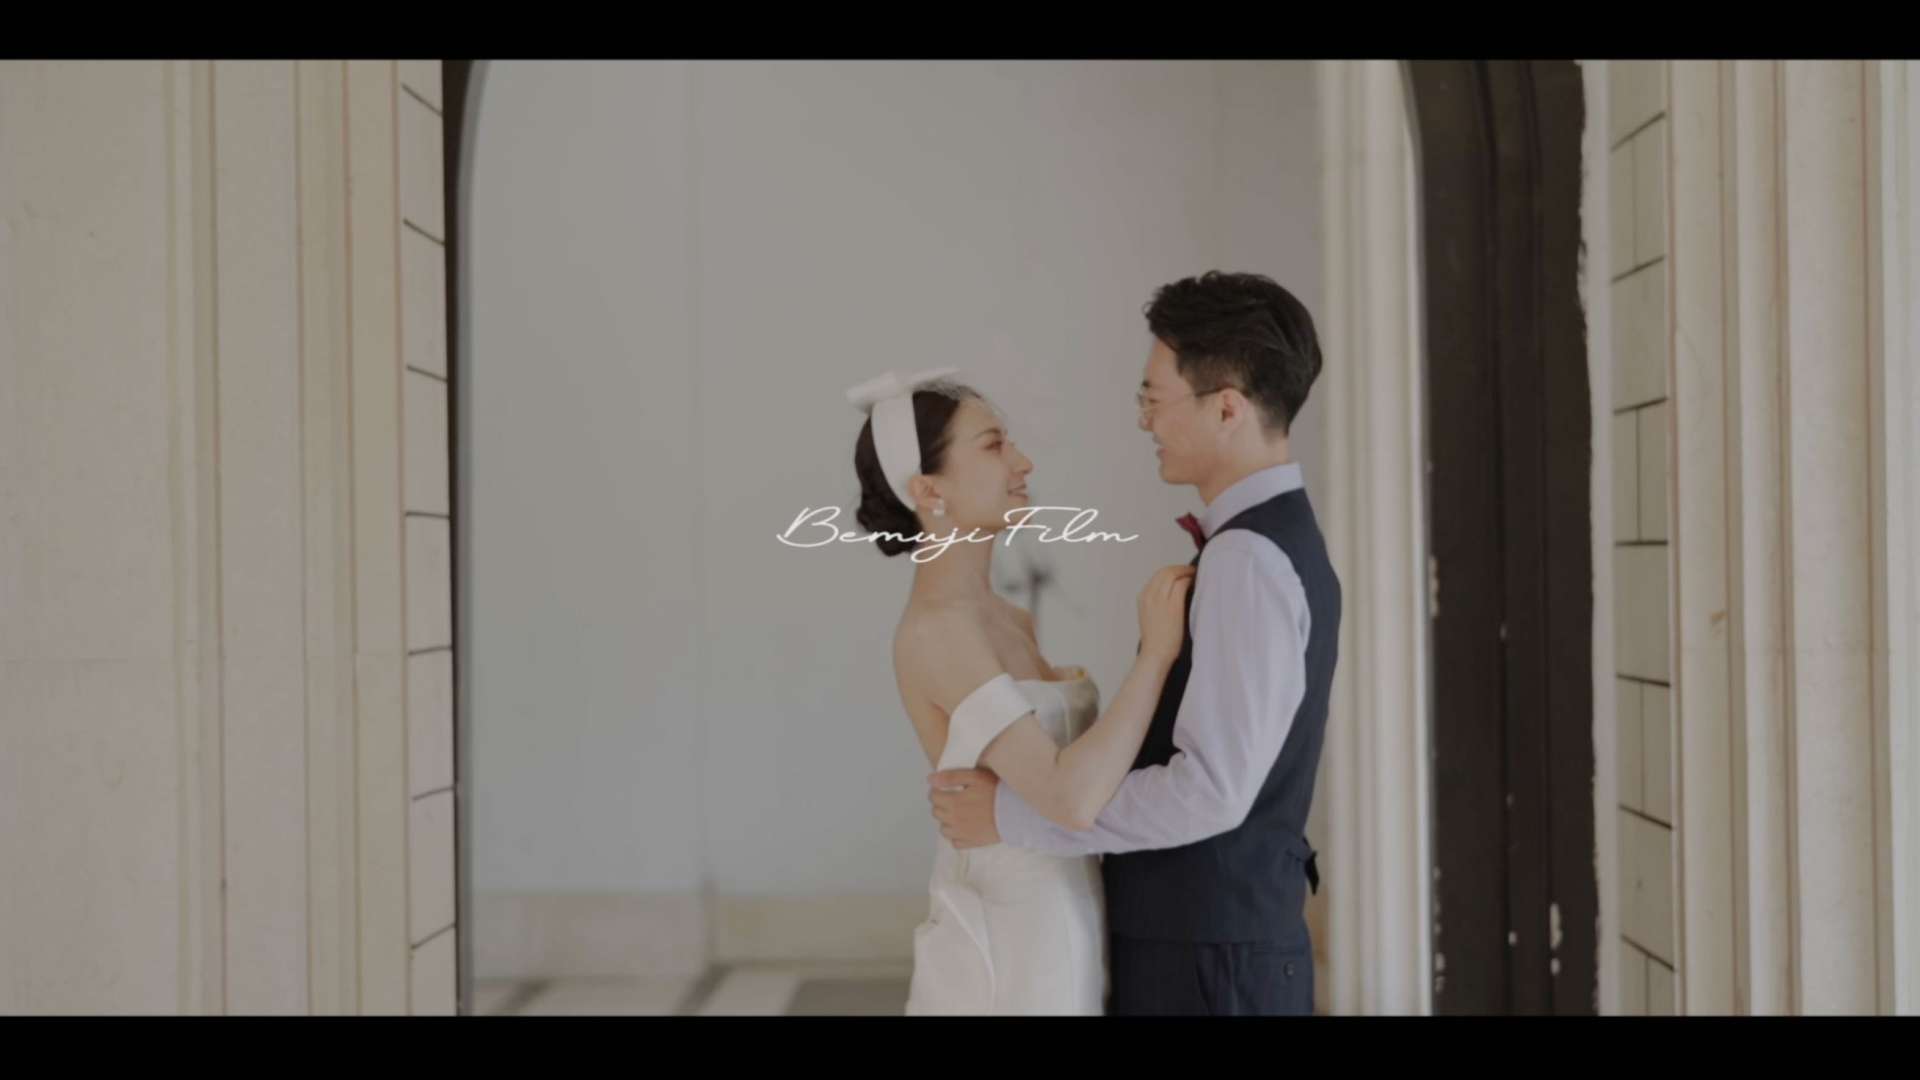 LU & XIAO丨婚礼微电影丨白沐纪电影工作室